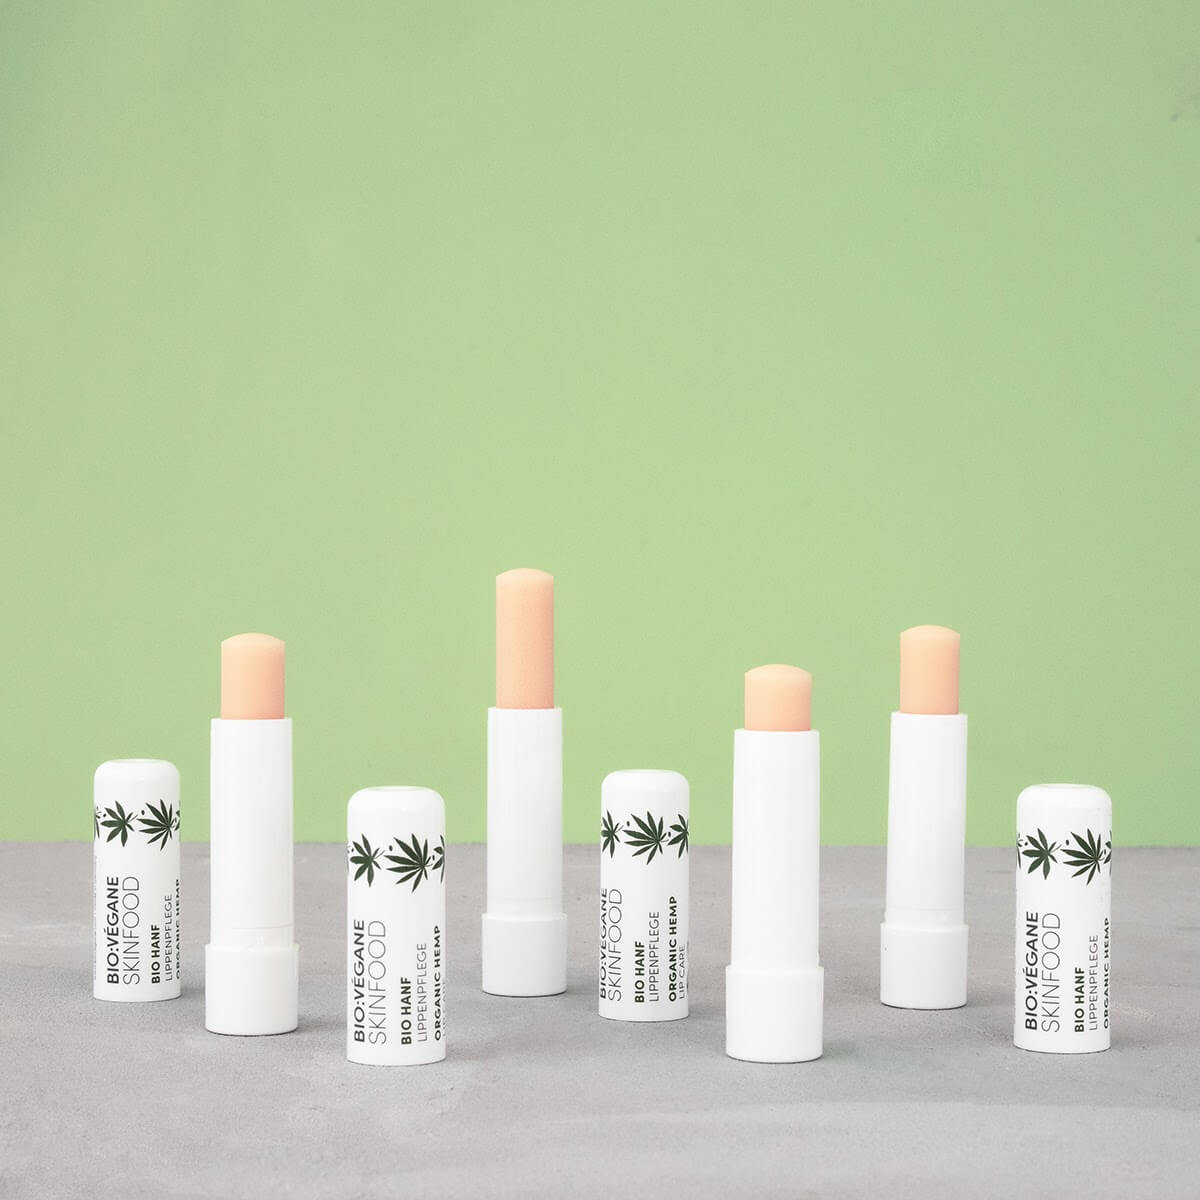 Lippenpflege - Stifte der Bio Hanf Lippenpflege geöffnet auf einem Bild